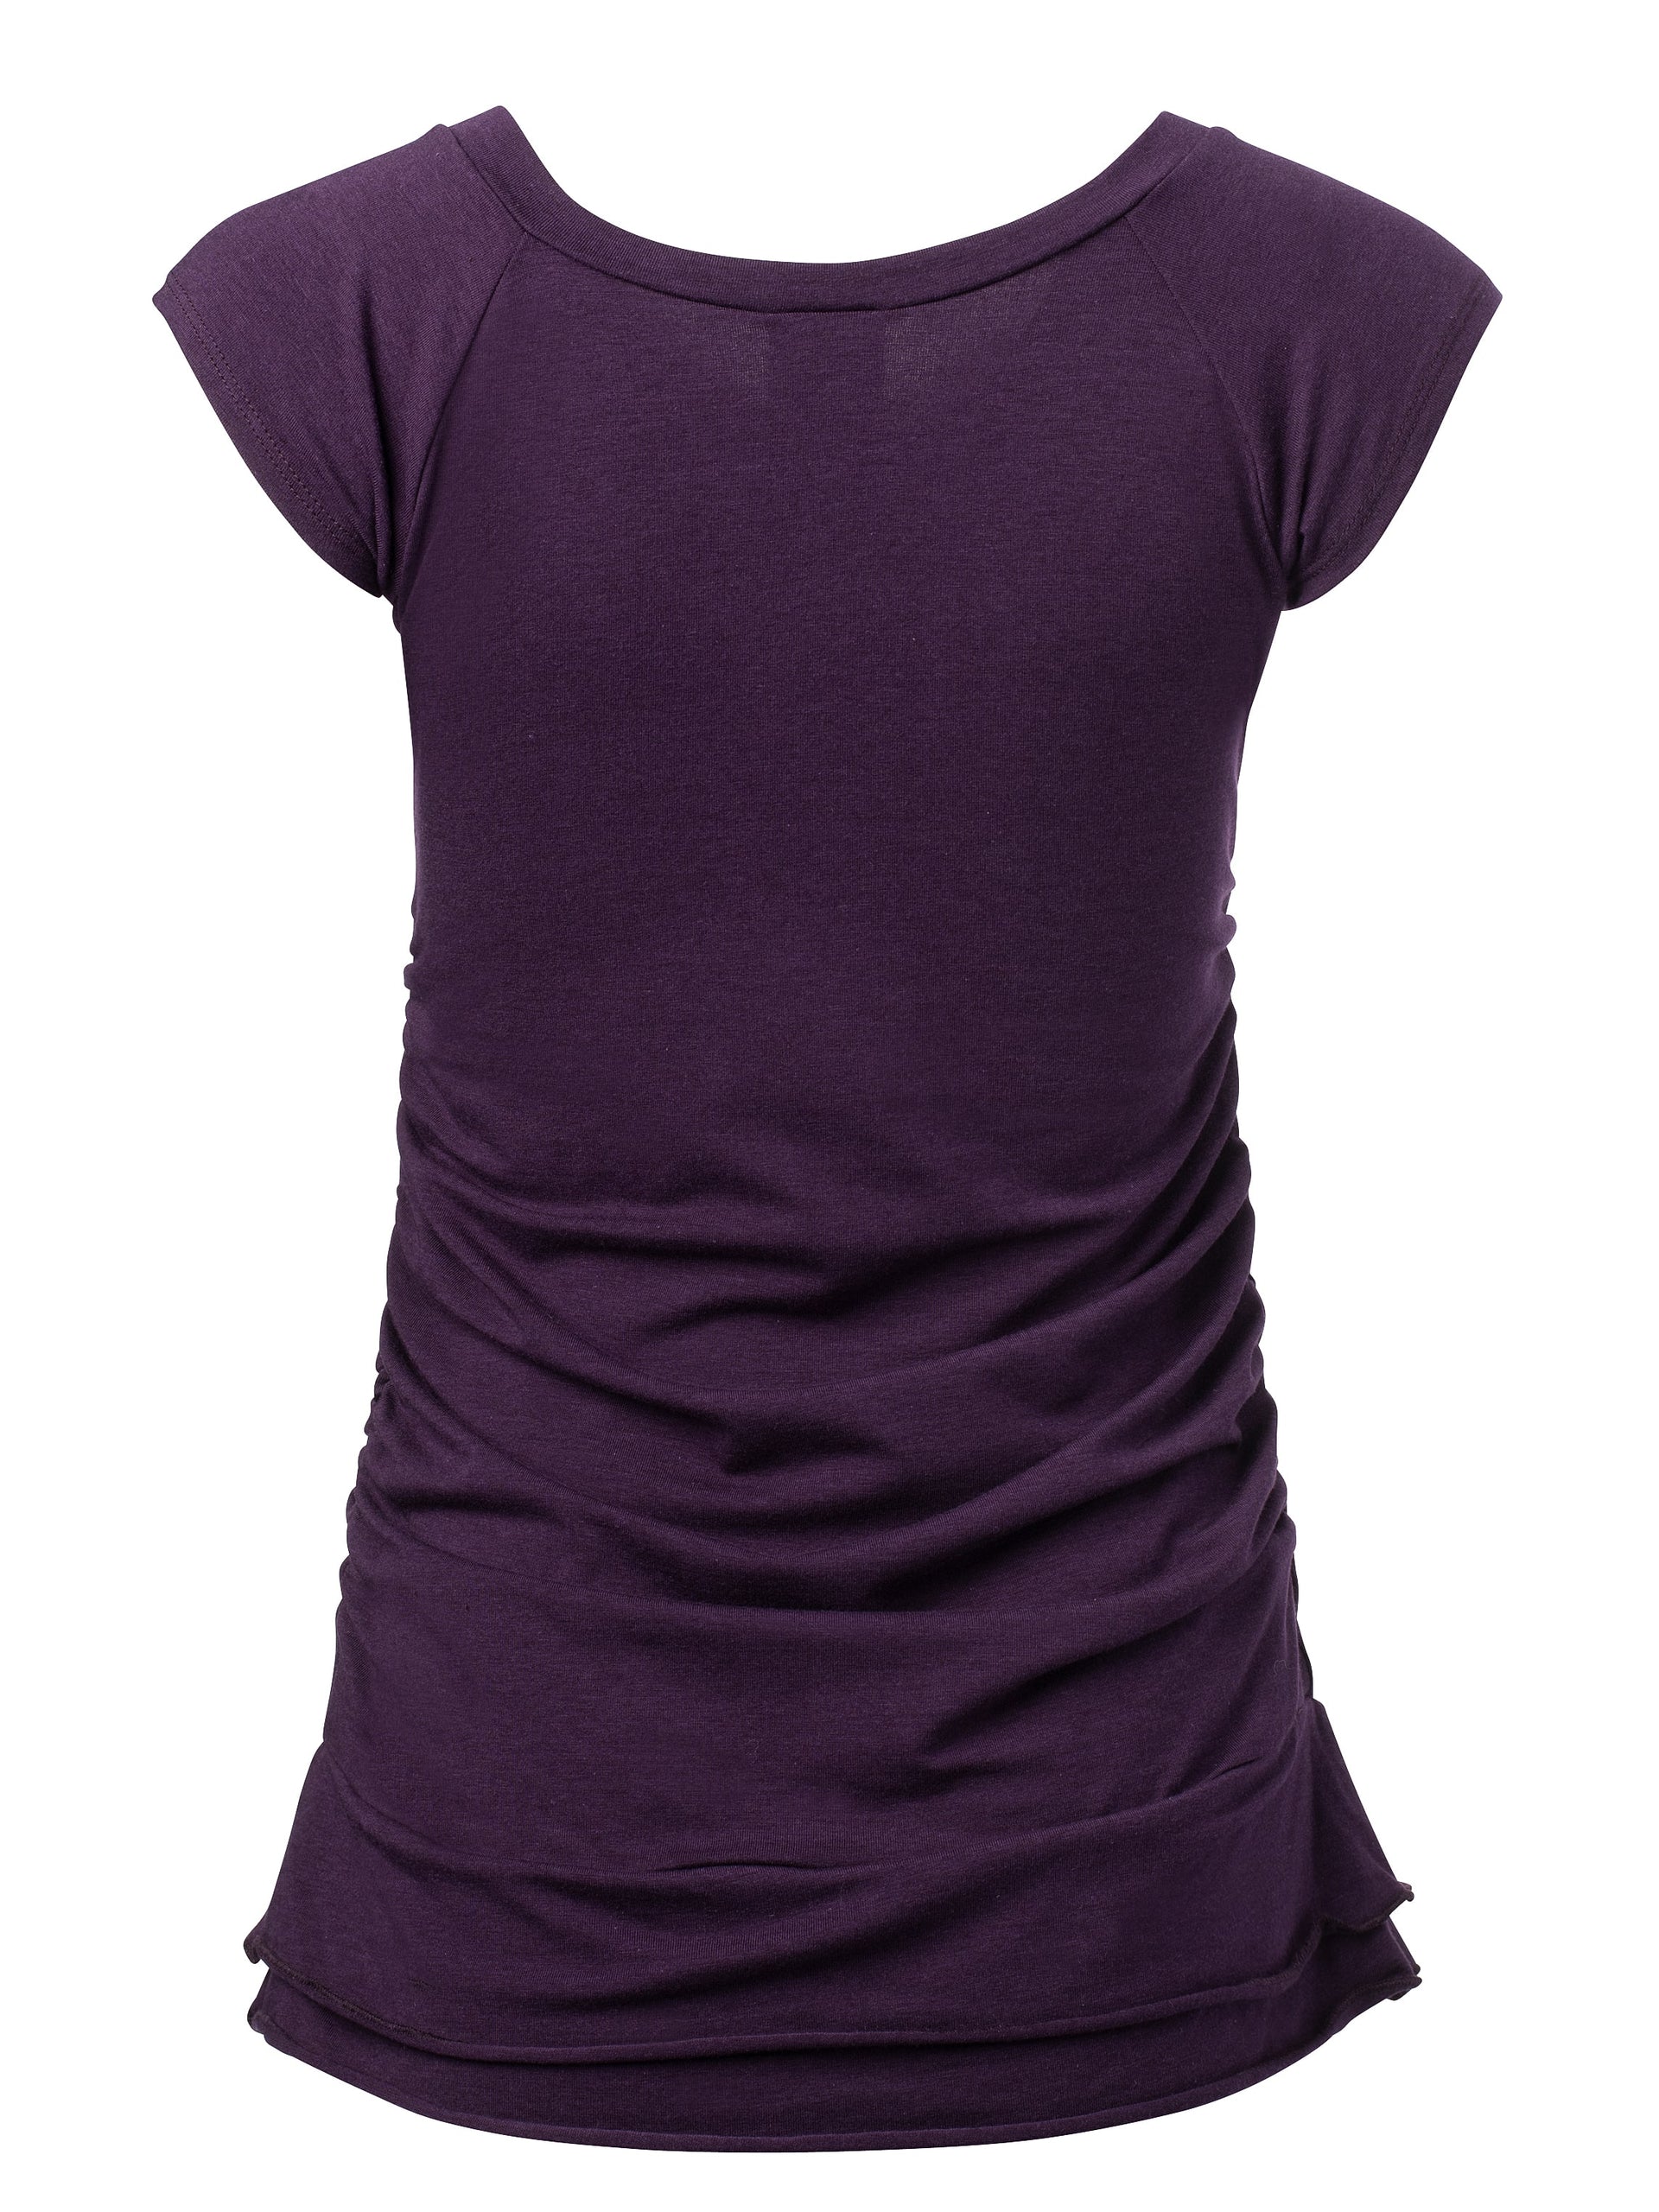 T-shirt-MYOSOTIS-tencel coton bio-mauve-femme-ghost dos-003C